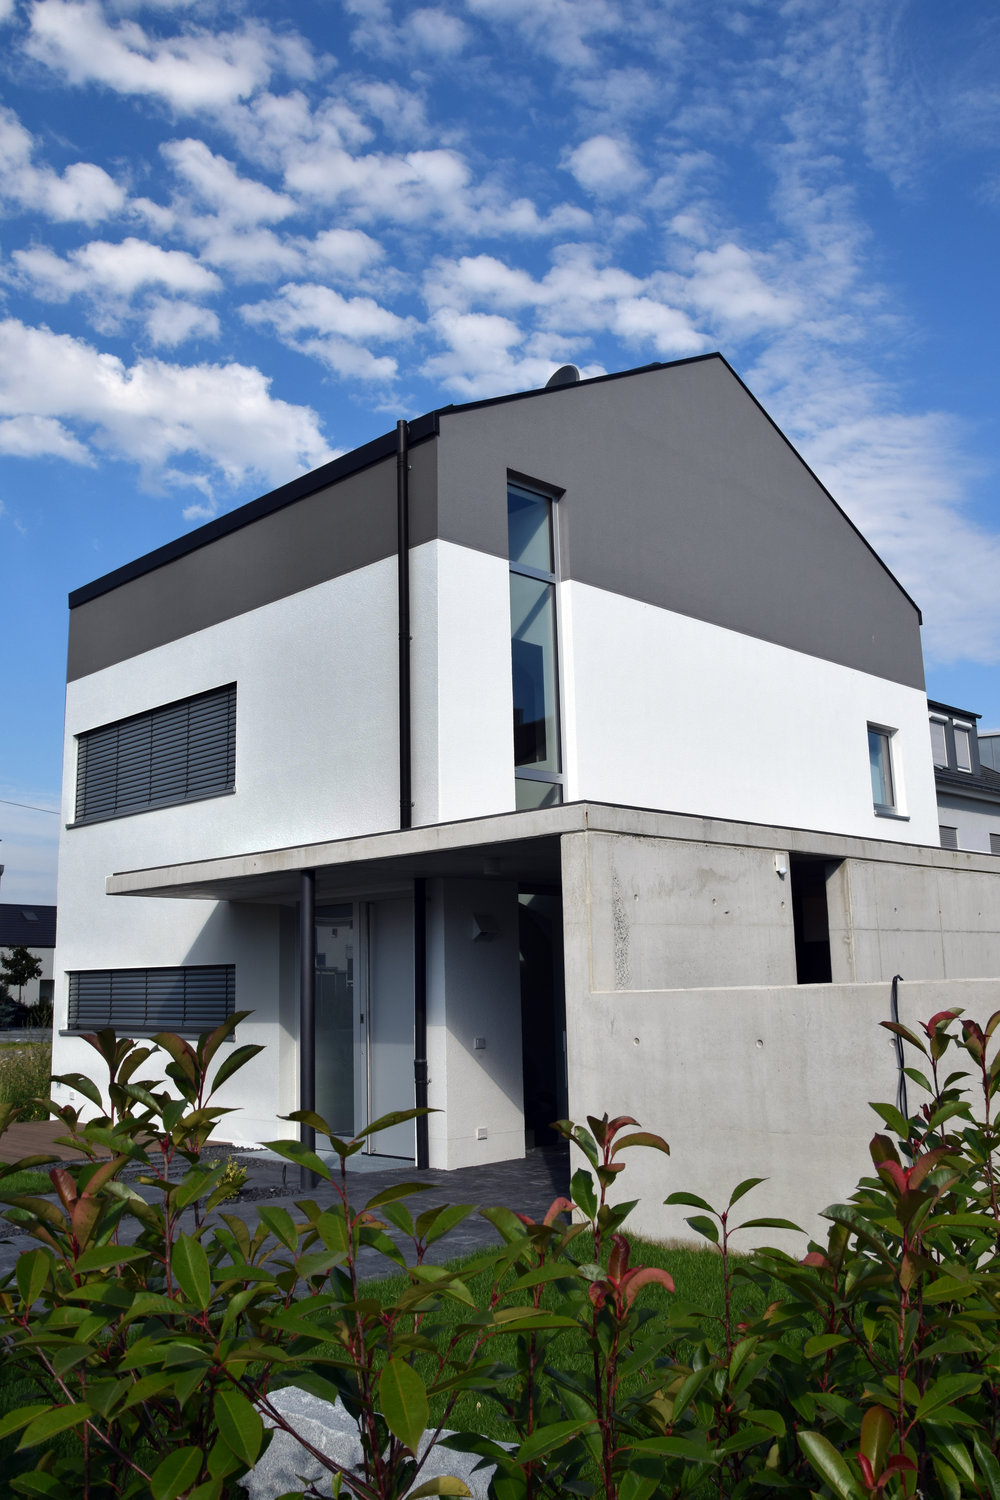 Außergewöhnliches Haus in Grau und Weiß - Architekt Hofbauer